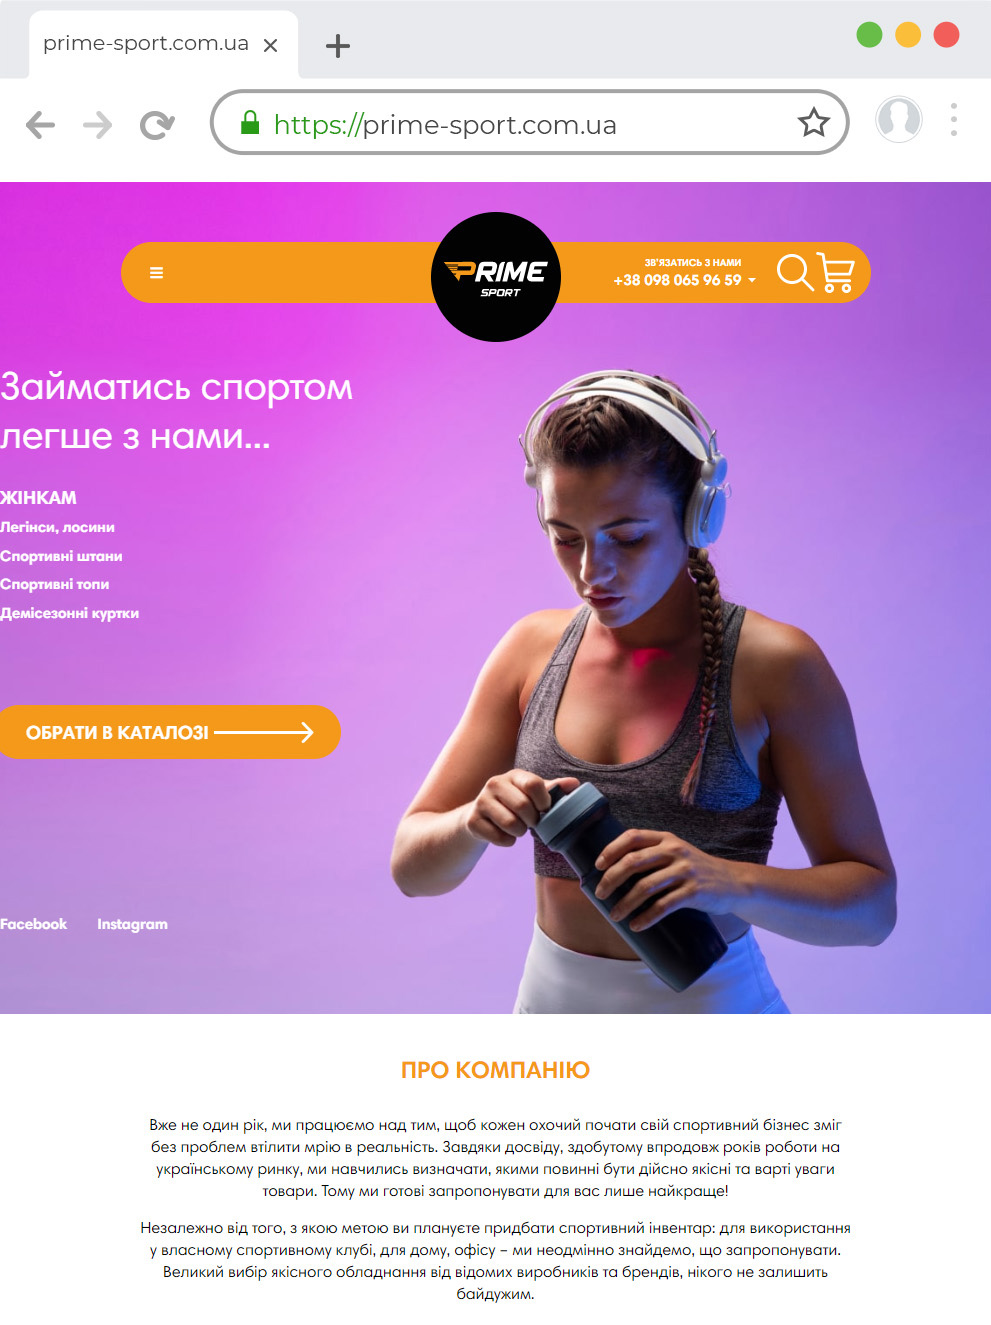 Разработка интернет магазина спортивных товаров prime-sport com ua